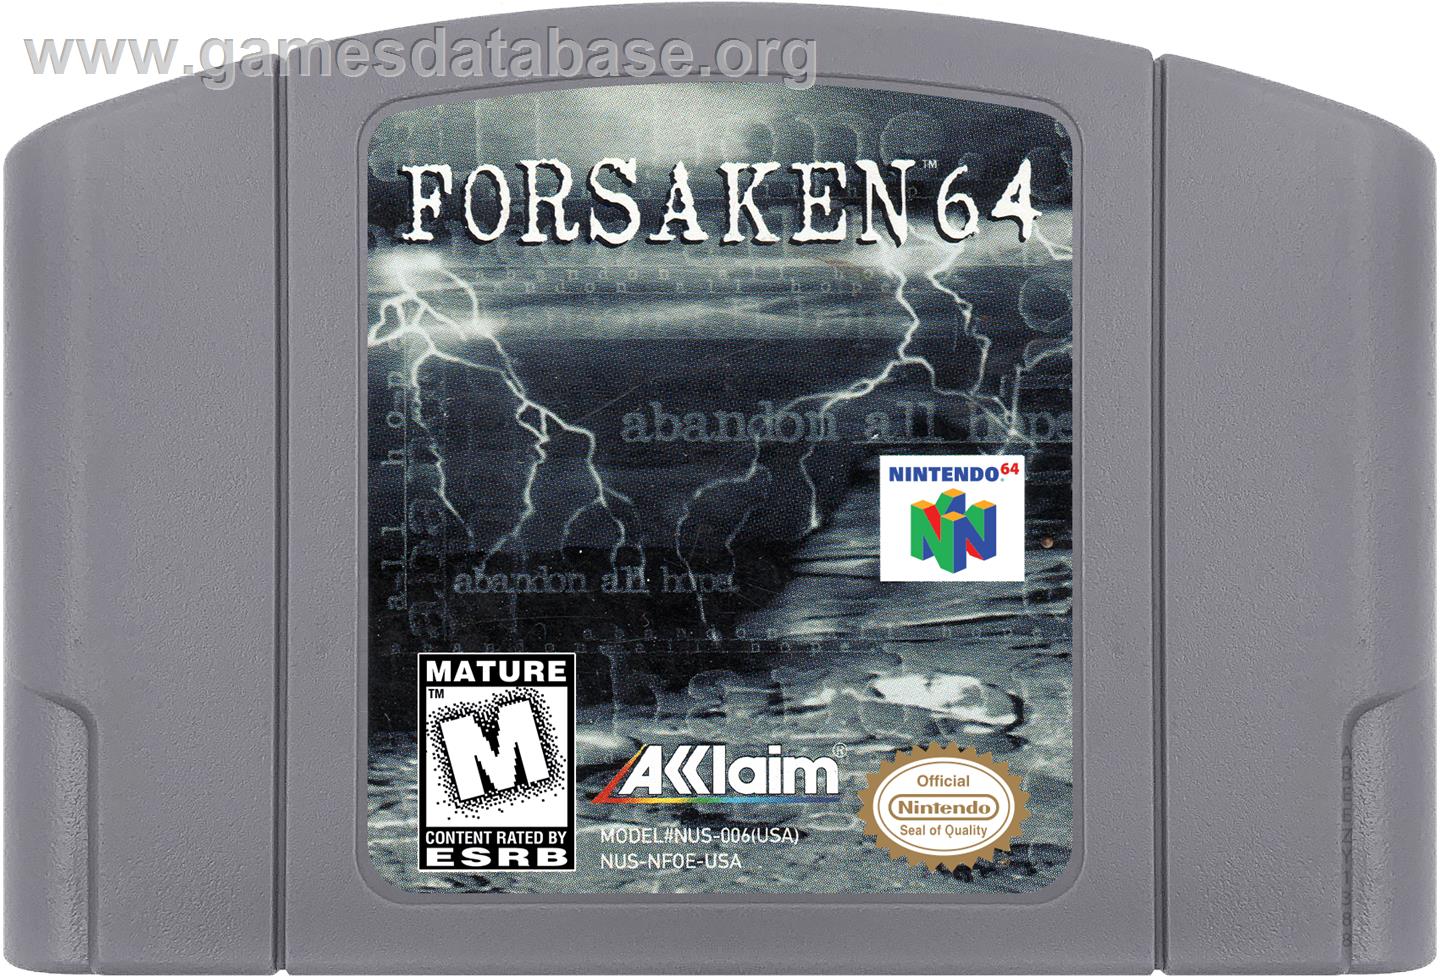 Forsaken 64 - Nintendo N64 - Artwork - Cartridge